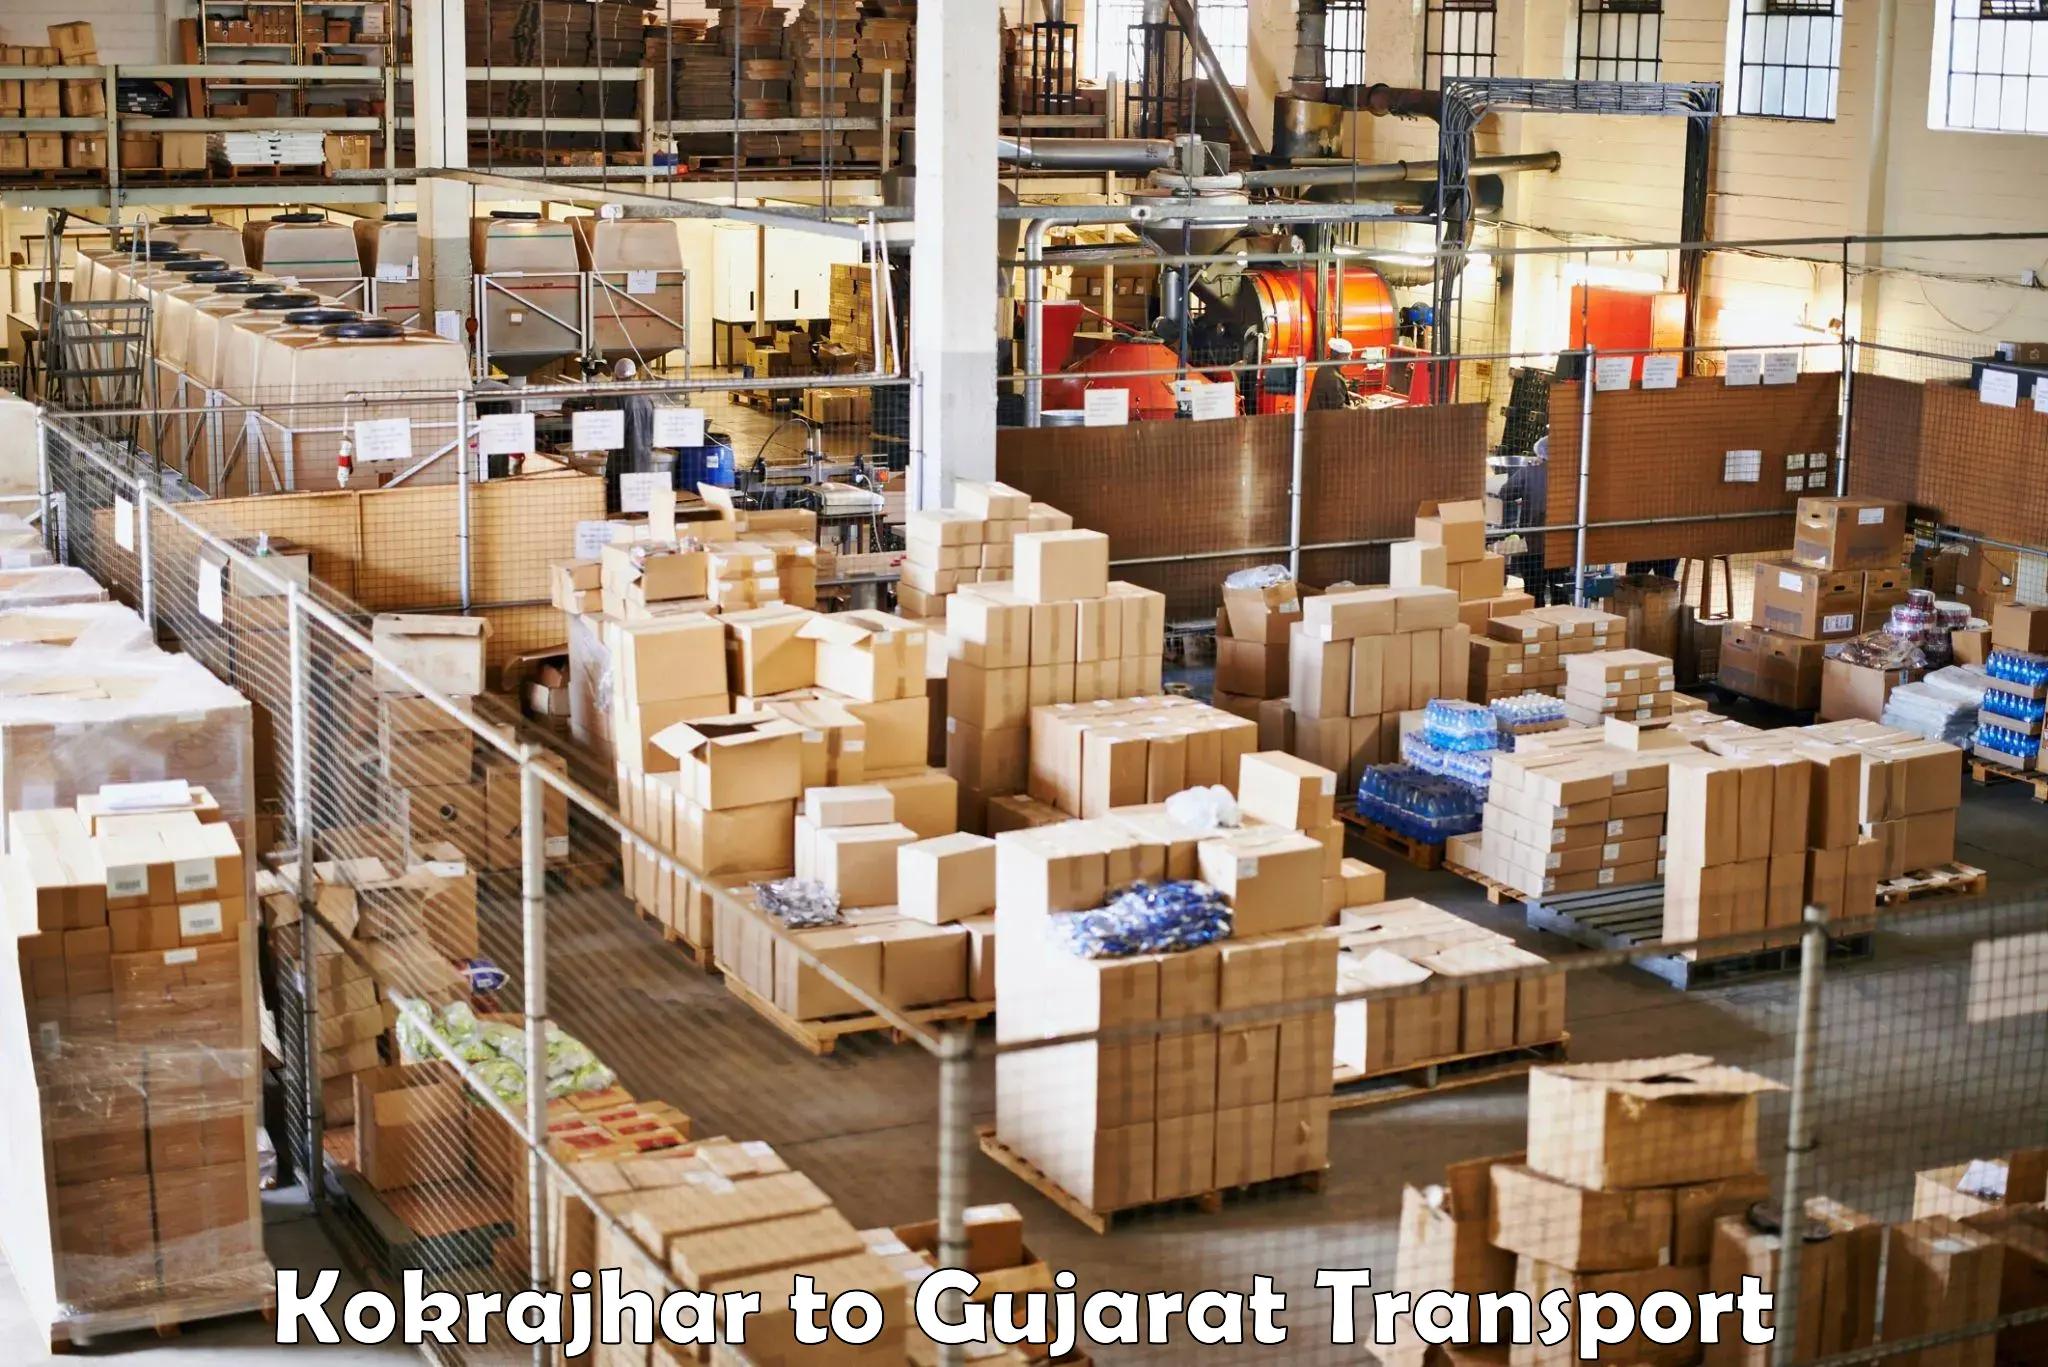 Delivery service Kokrajhar to Surendranagar